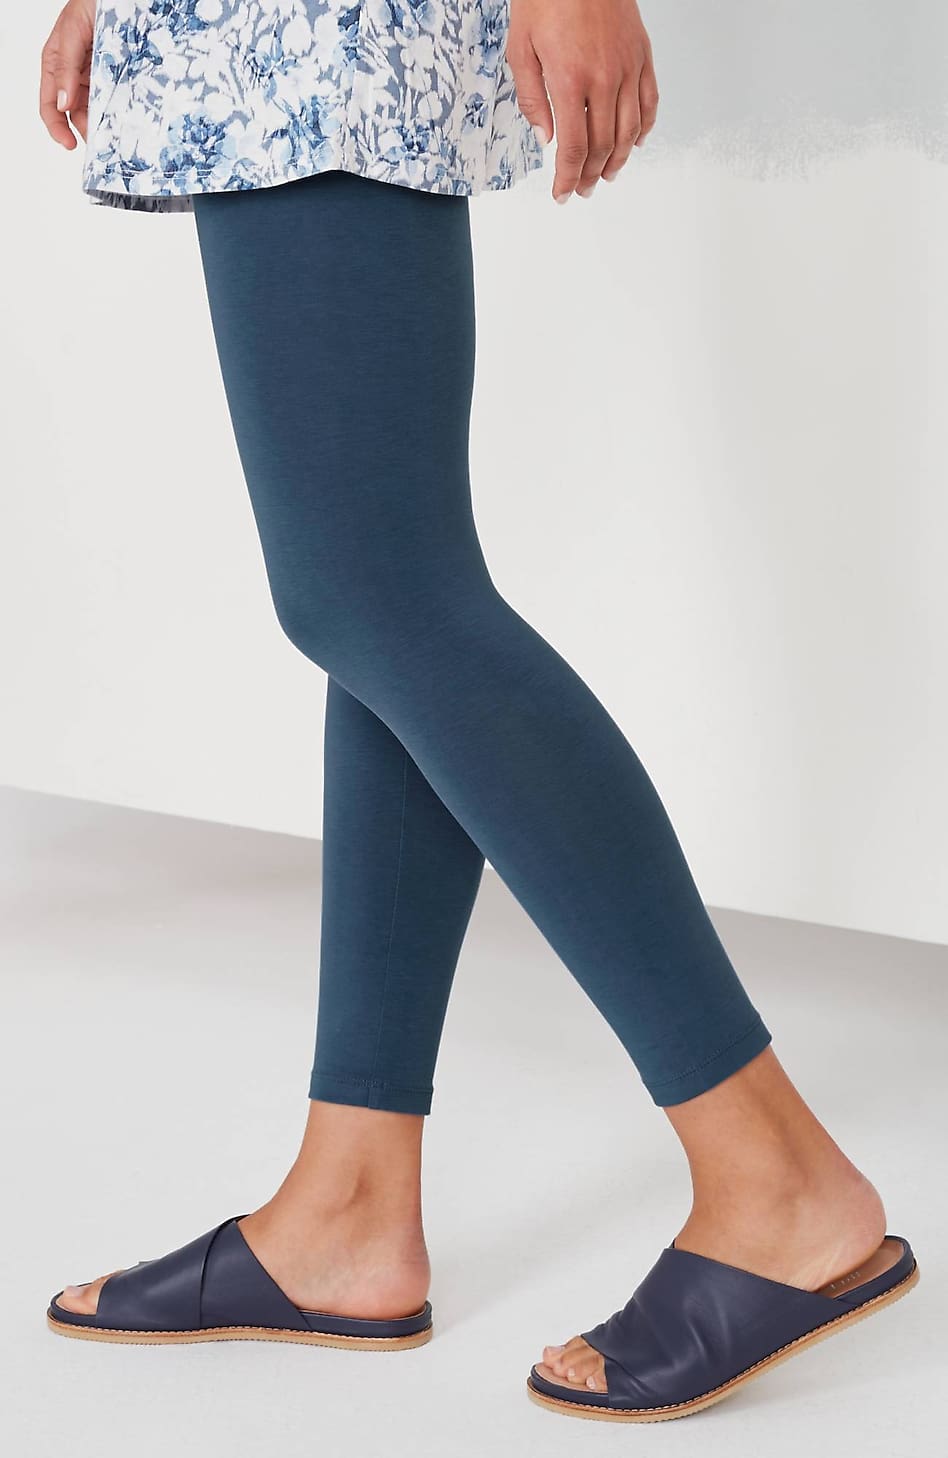 DSG athletic leggings. Capri Yoga pants. Size Medium. - $16 - From Jill